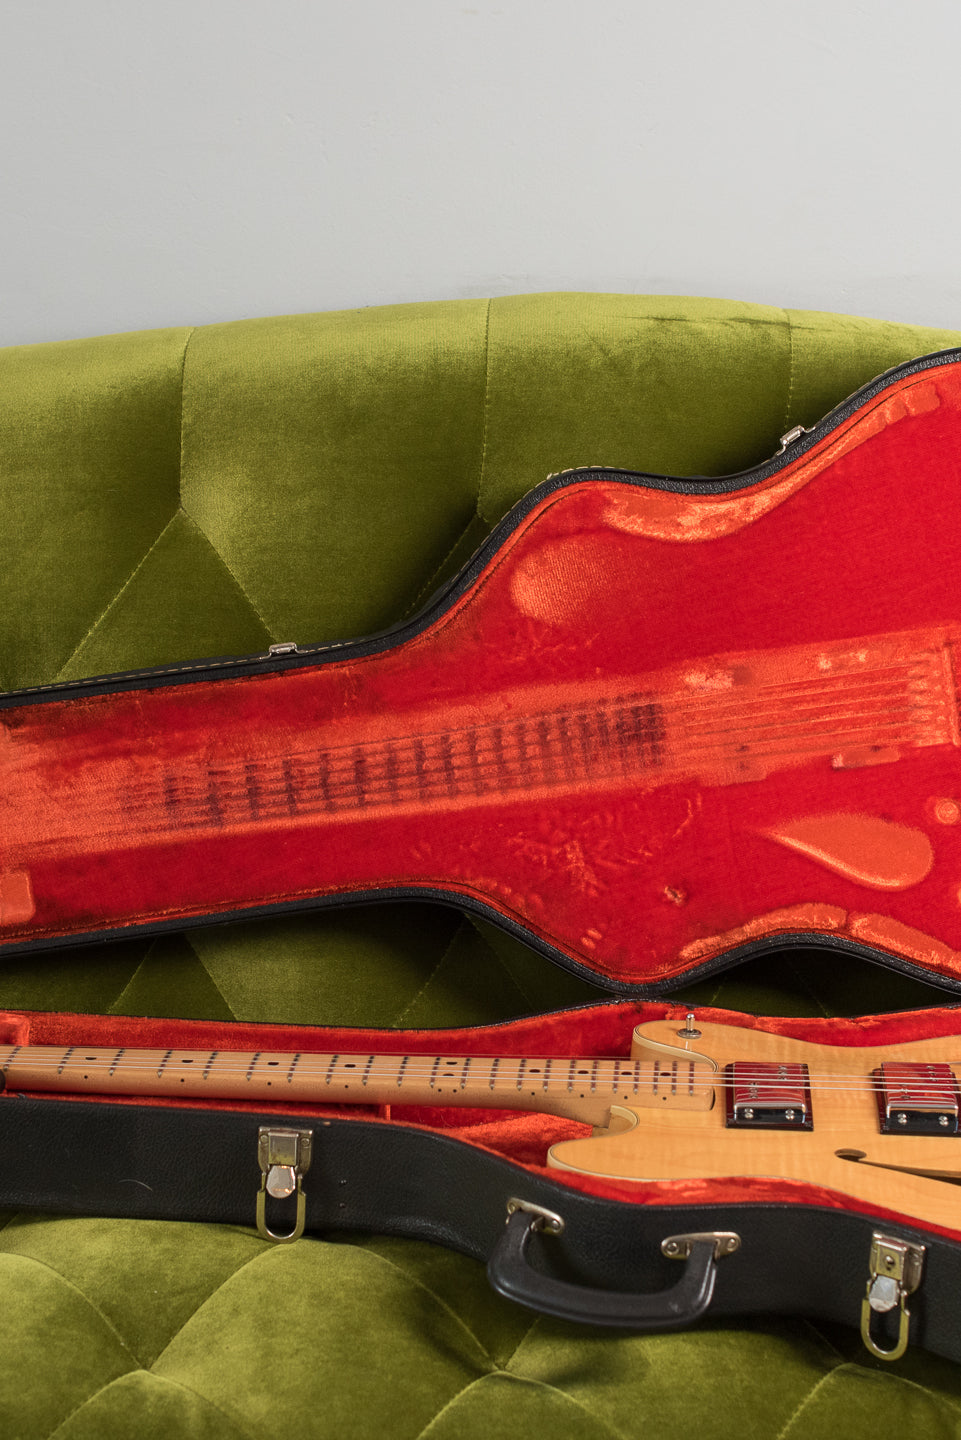 Original Case, Vintage 1976 Fender Starcaster Natural